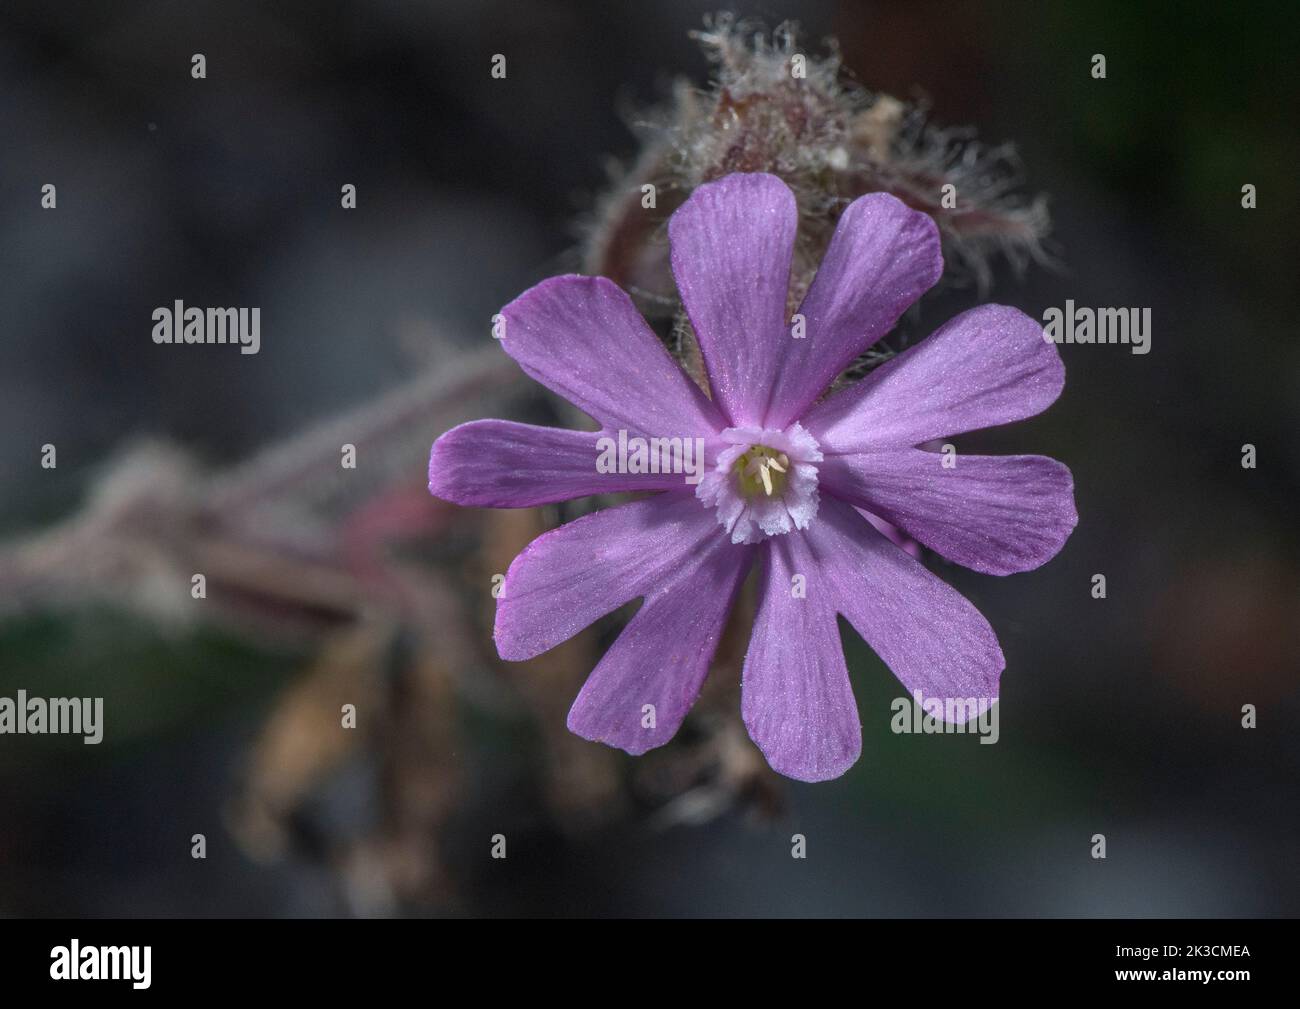 Híbrido de Campión Rosa, Sileno latifolia x Sileno dioica = Sileno x hampeana. (campión rojo x Campión blanco) en flor. Foto de stock